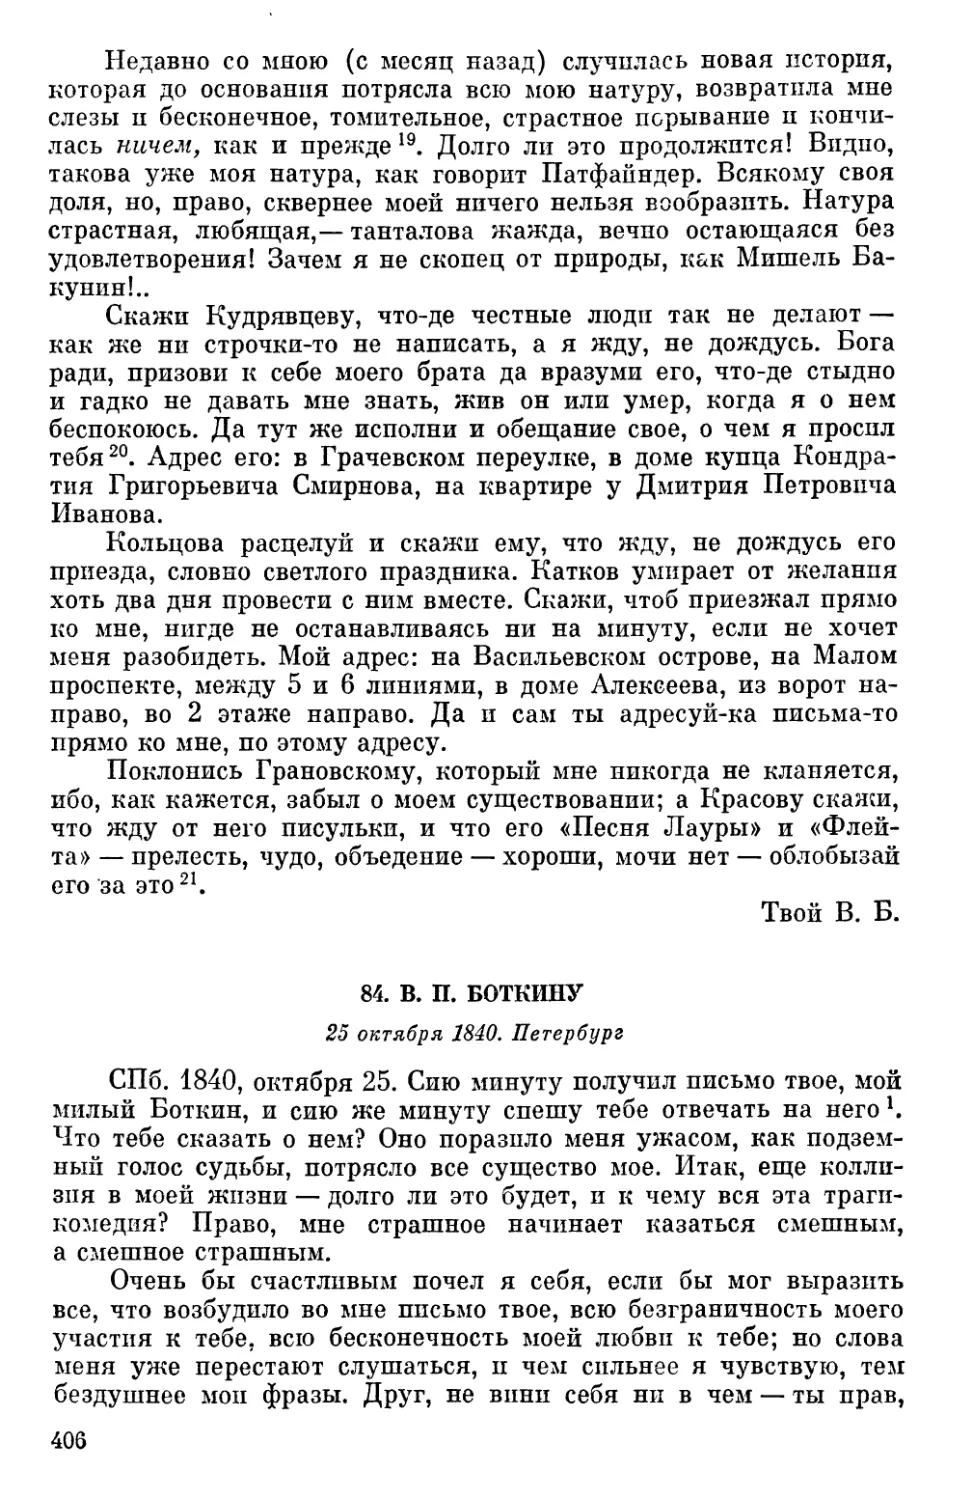 84. В. П. Боткину. 25 октября 1840